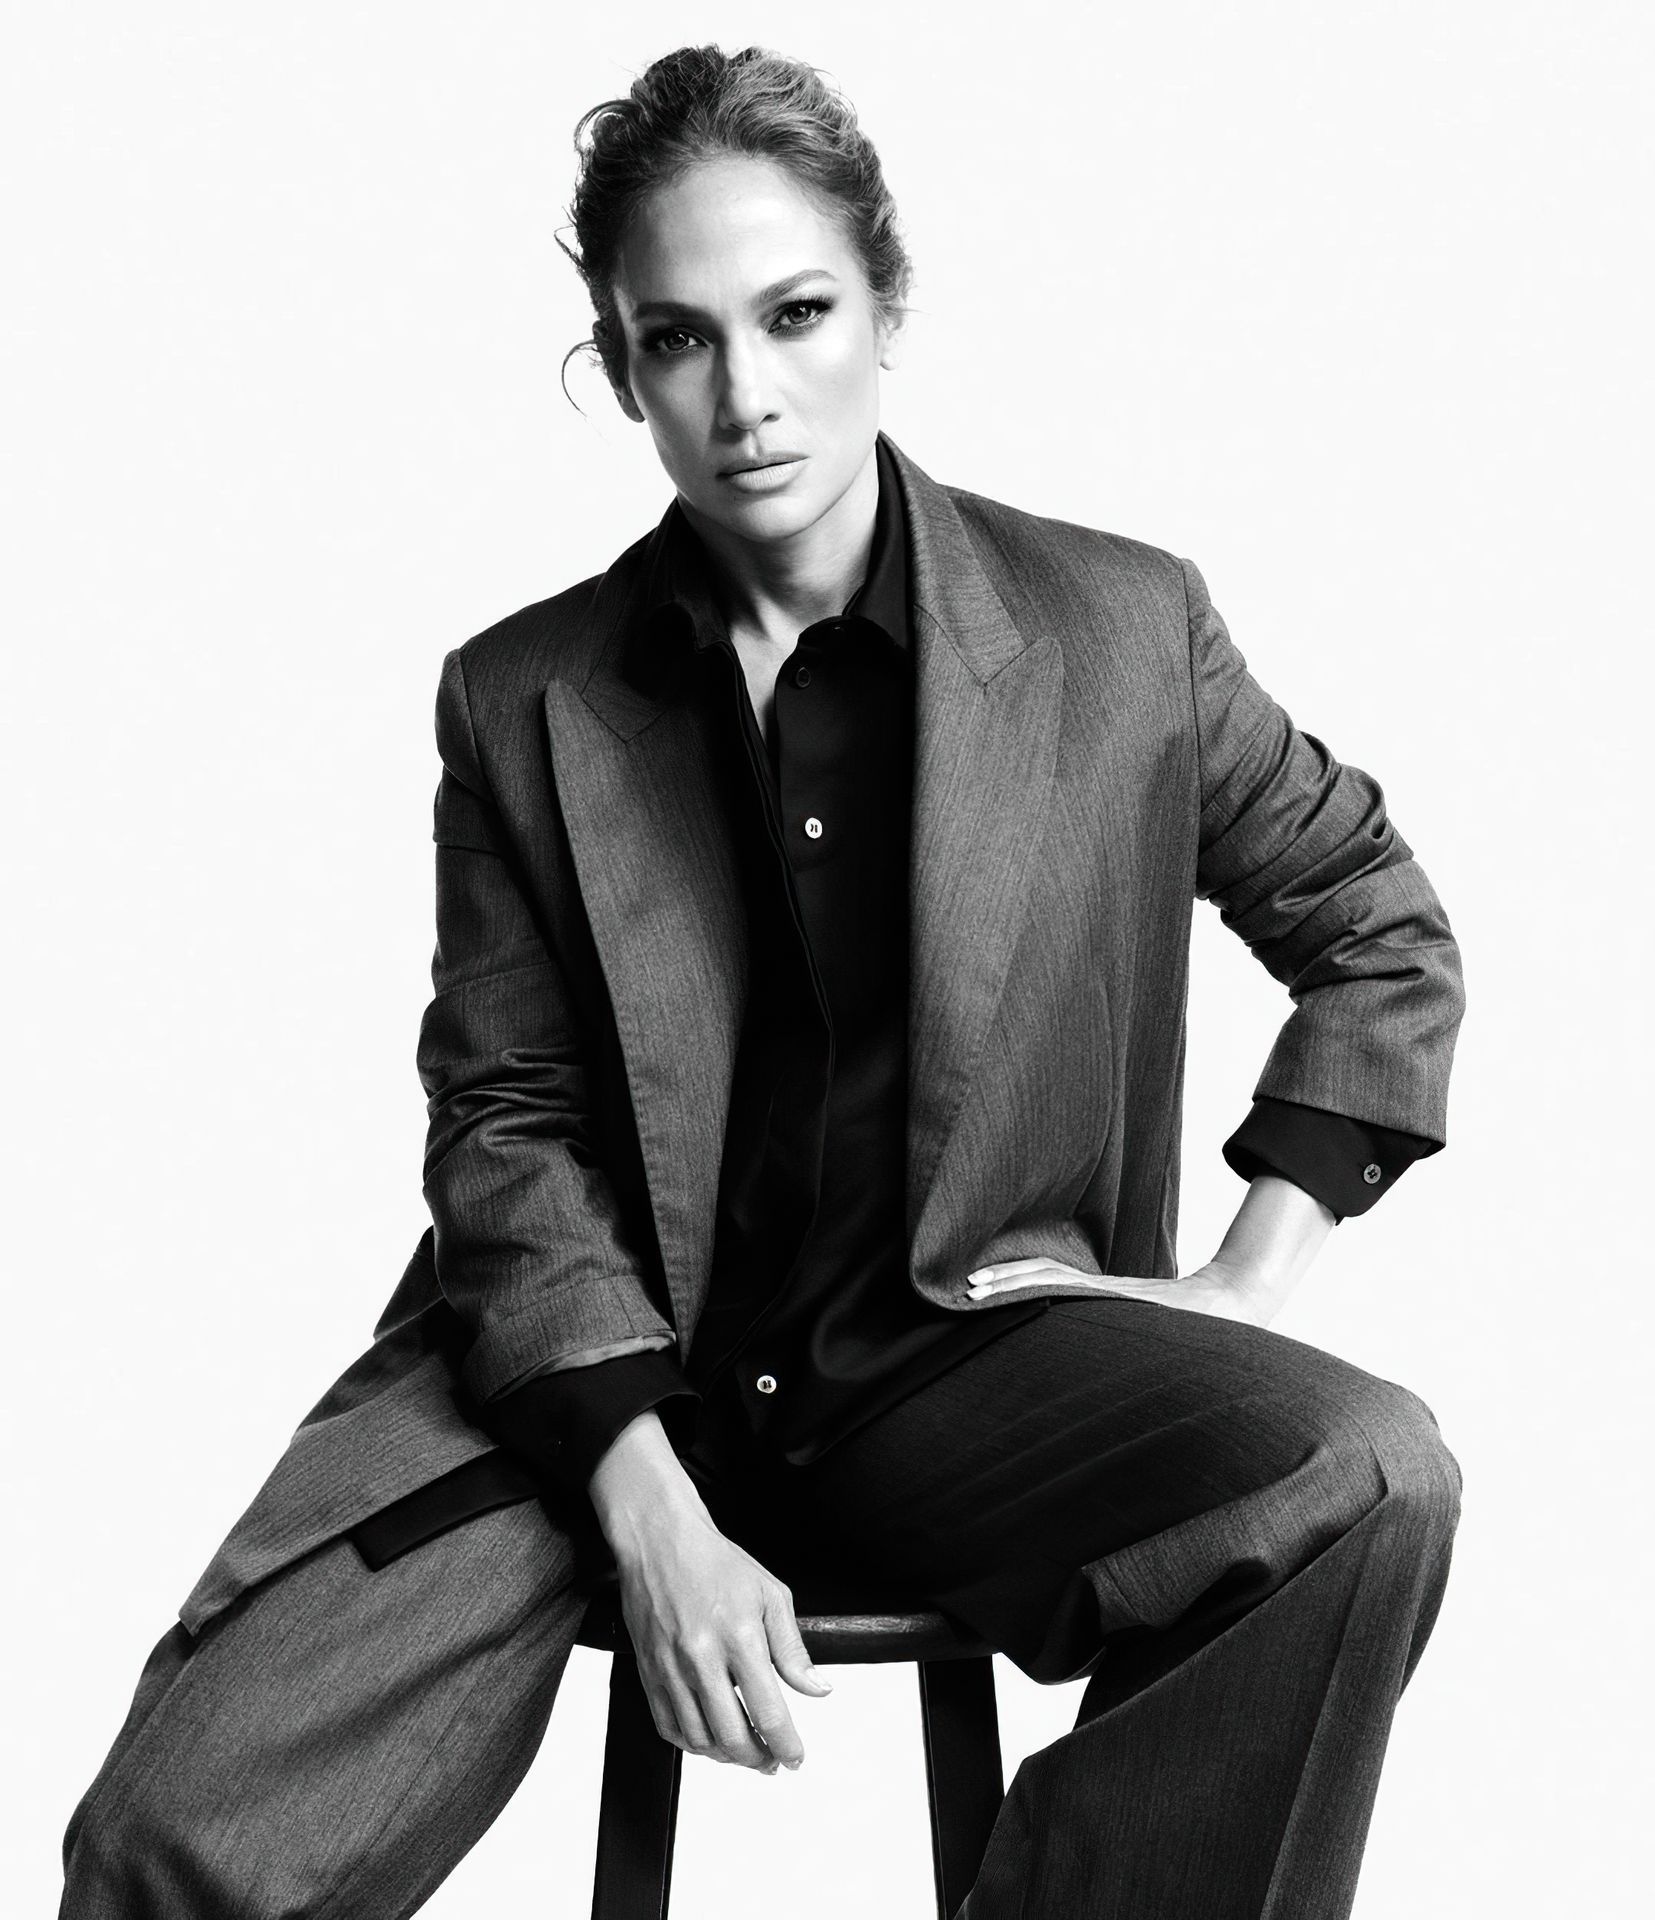 Jennifer Lopez Sexy - WSJ Magazine (7 Photos)